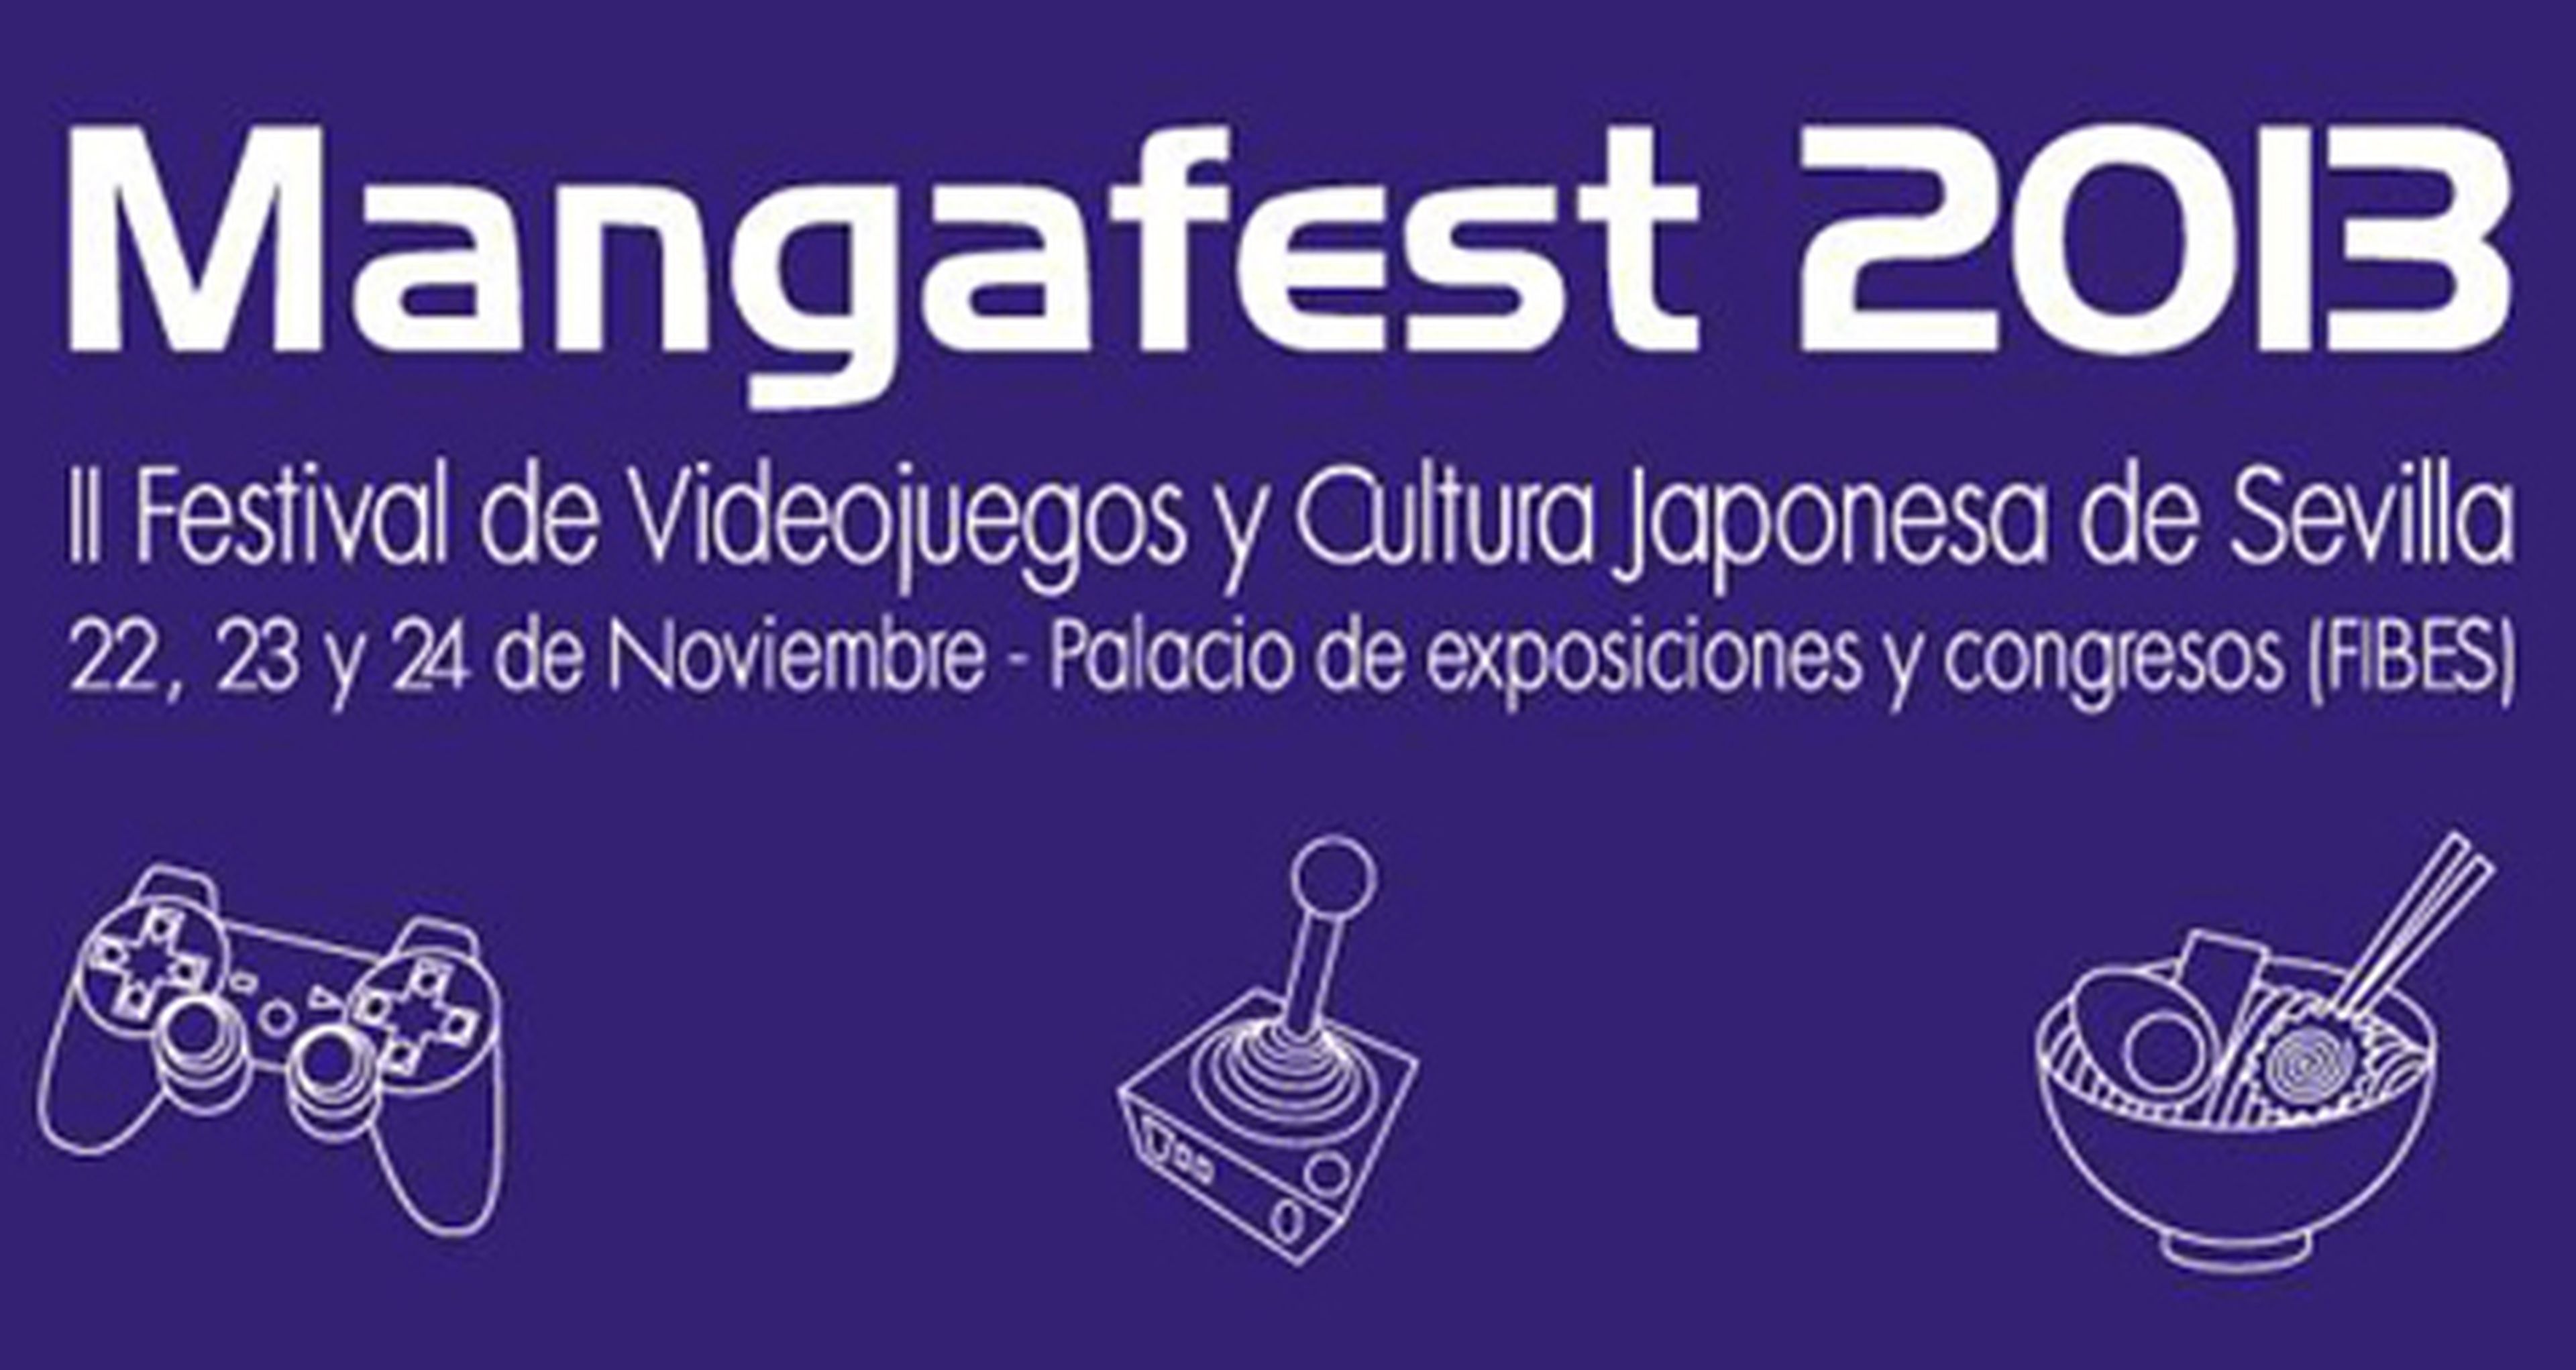 Qué esperar del Mangafest 2013